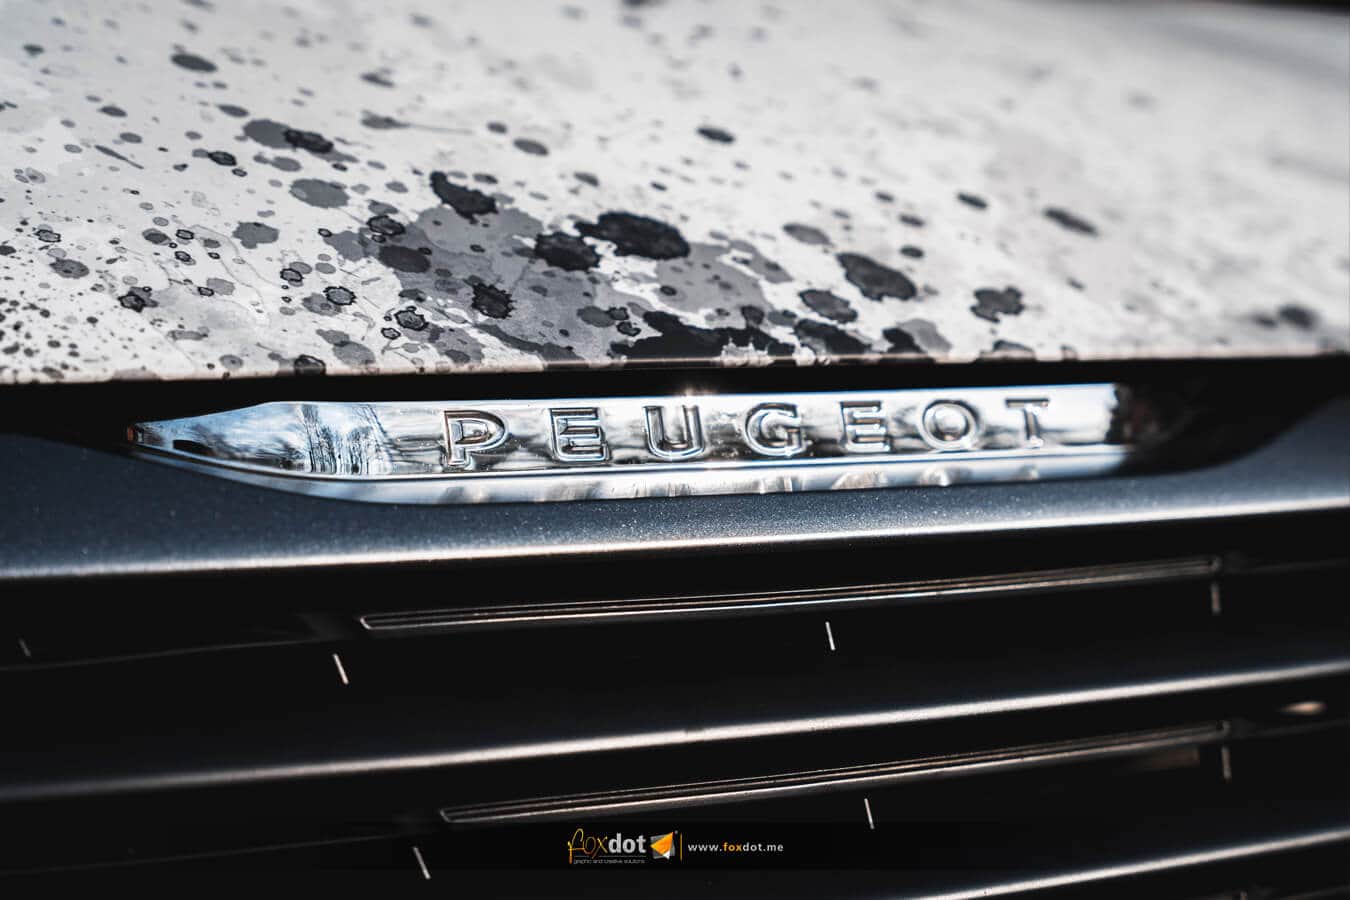 Autofolierung Peugeot 308 nach nordischer Mythologie